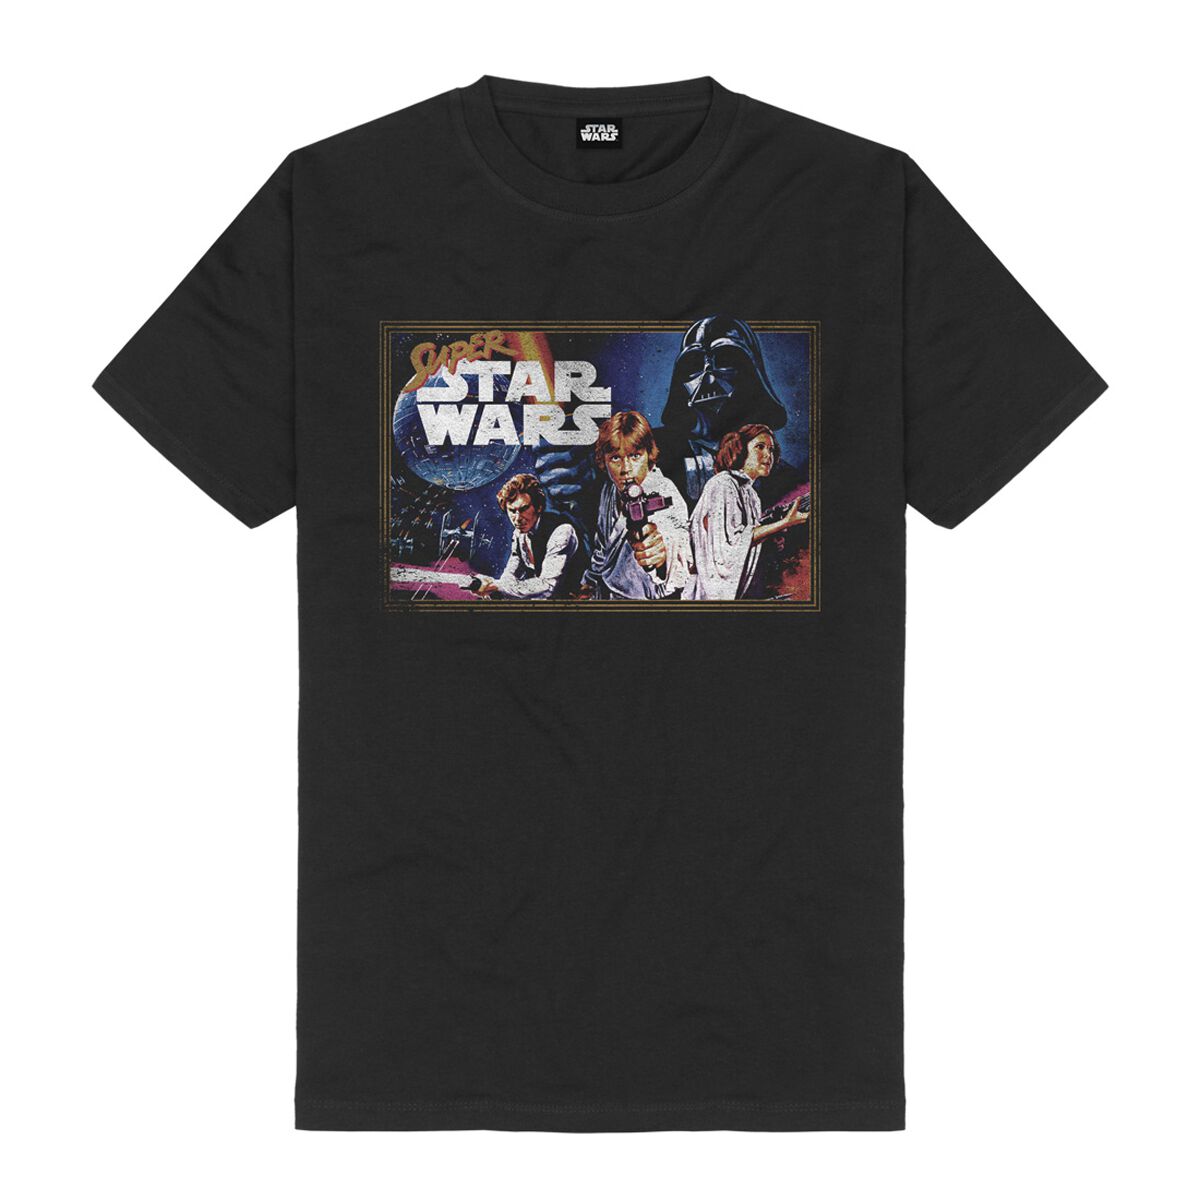 Star Wars T-Shirt - Super Star Wars Game - S bis M - für Männer - Größe S - schwarz  - Lizenzierter Fanartikel